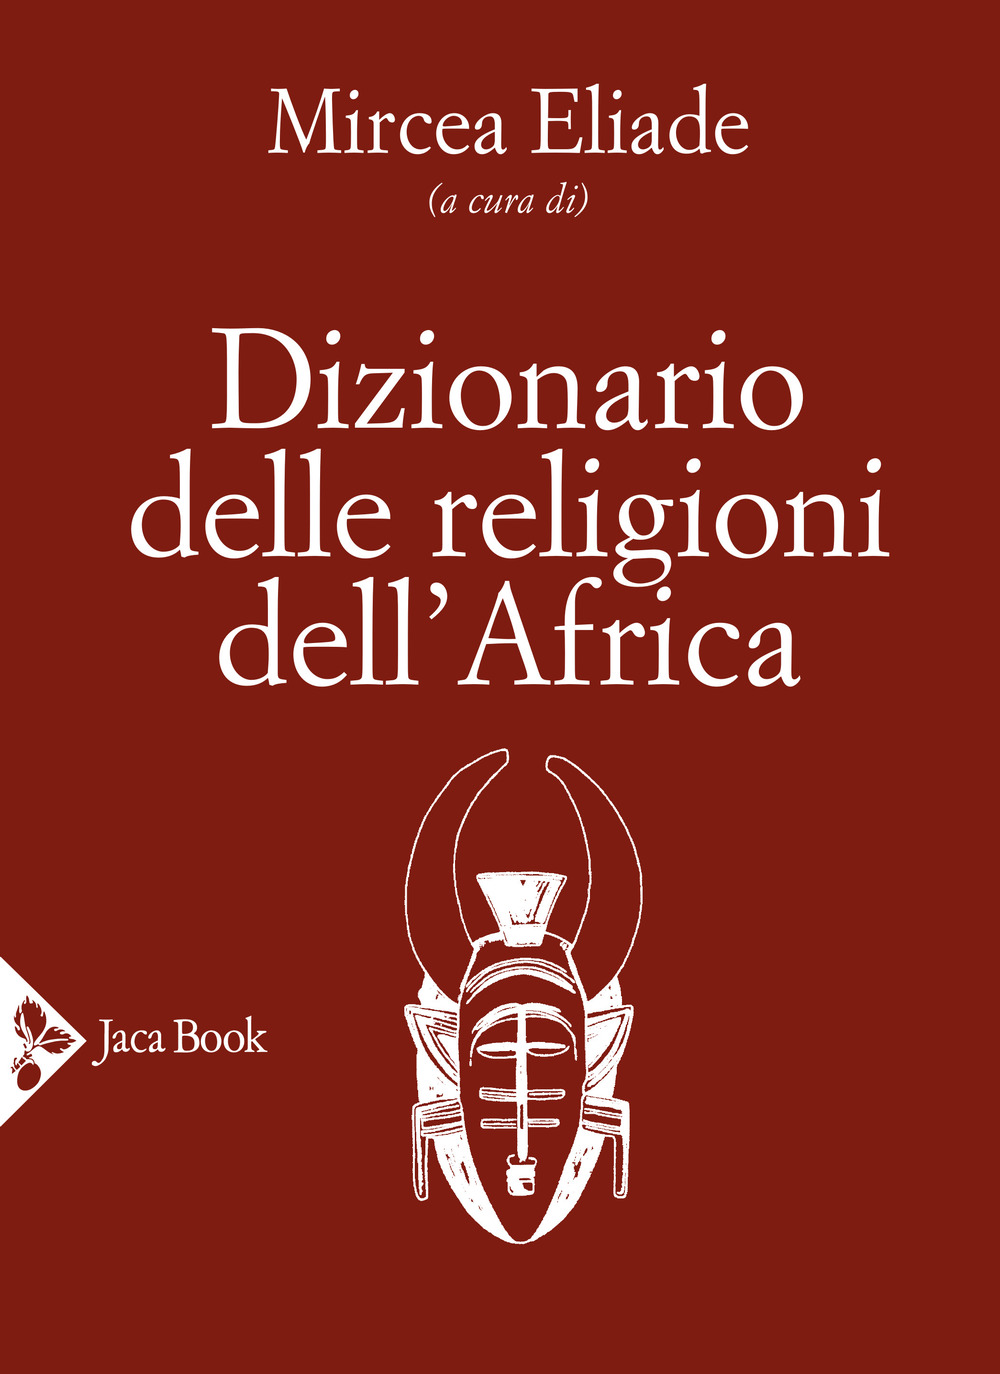 Image of Dizionario delle religioni dell'Africa